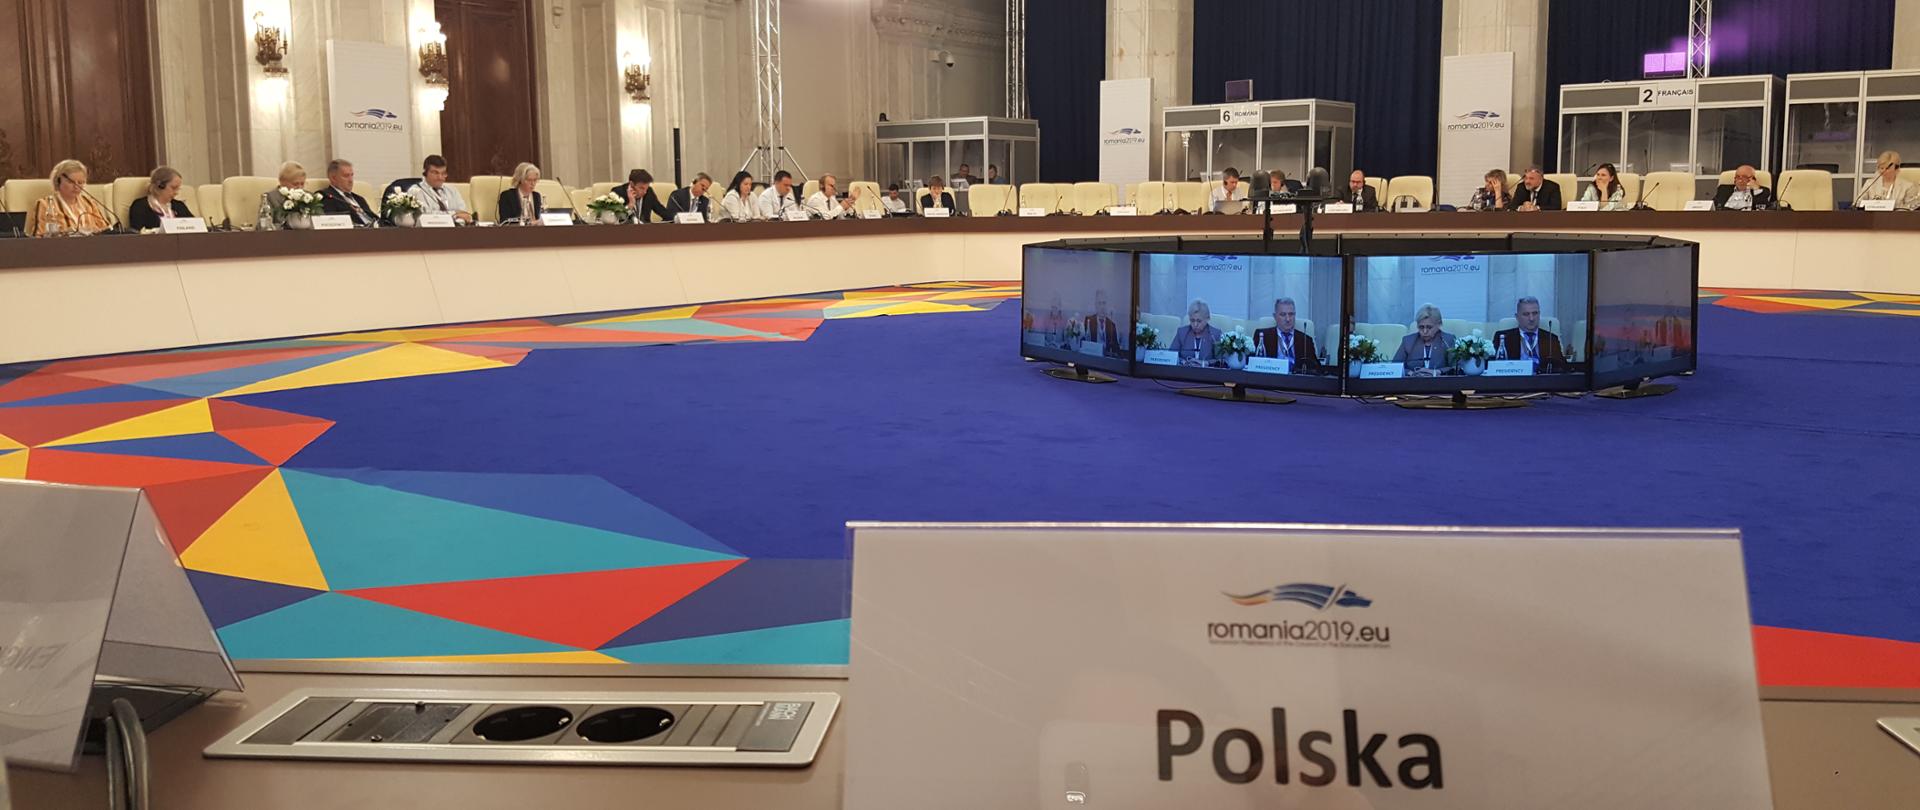 Widok na salę konferencyjną i prelegentów przy okrągłym stole. Na pierwszym planie tabliczka z napisem "Polska".